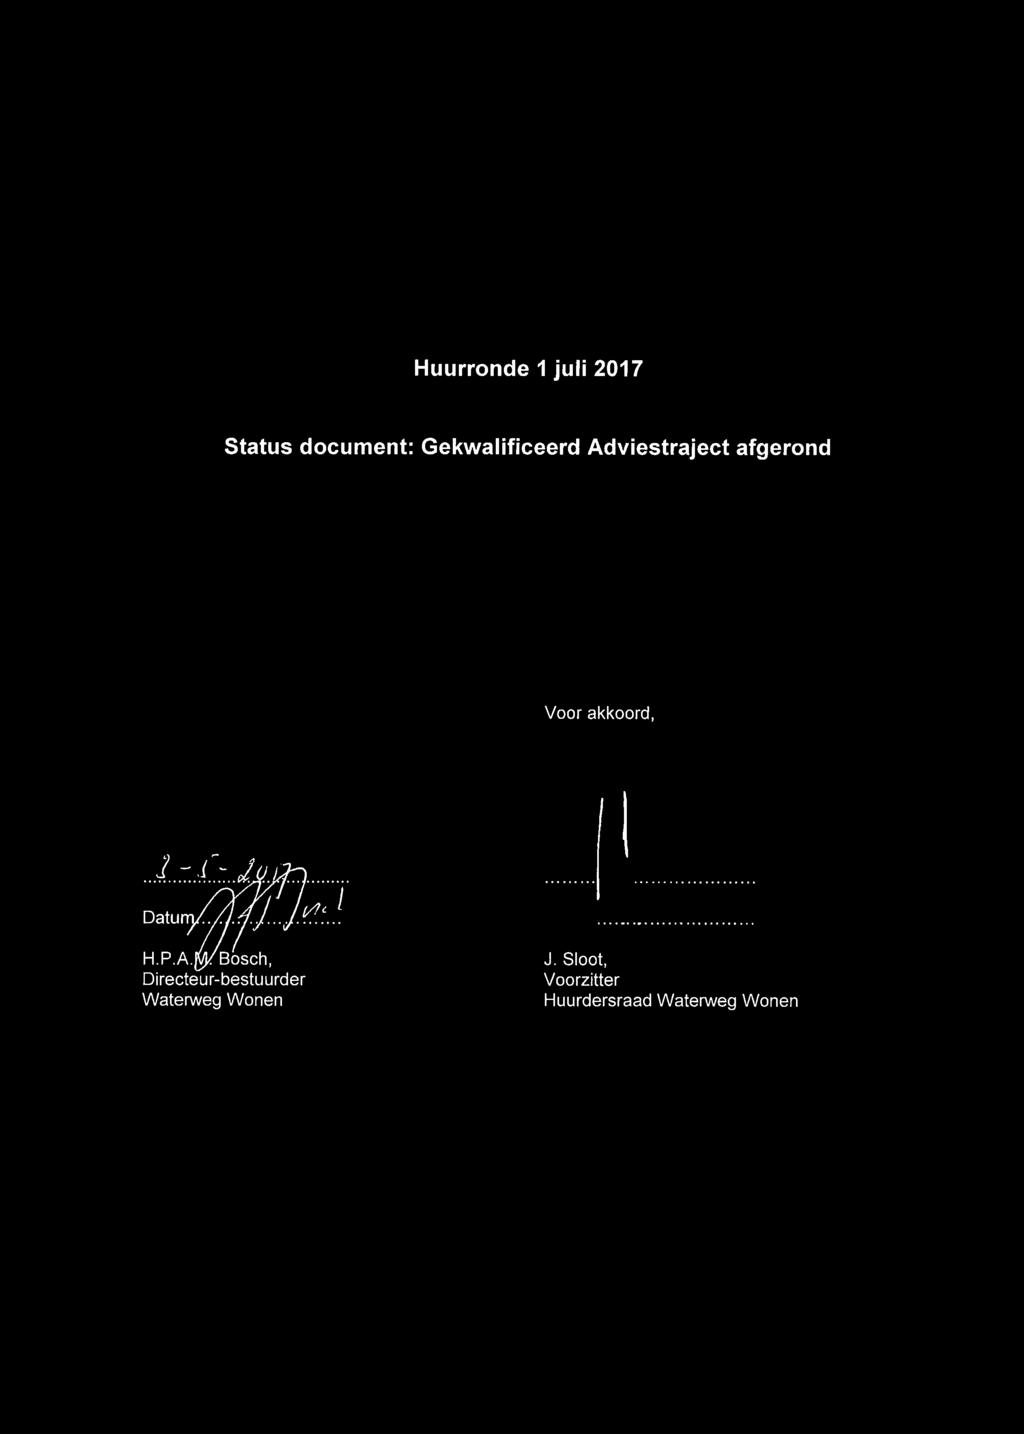 Huurronde 1 juli 2017 Status document: Gekwalificeerd Adviestraject afgerond Voor akkoord, Datunj/2^/.